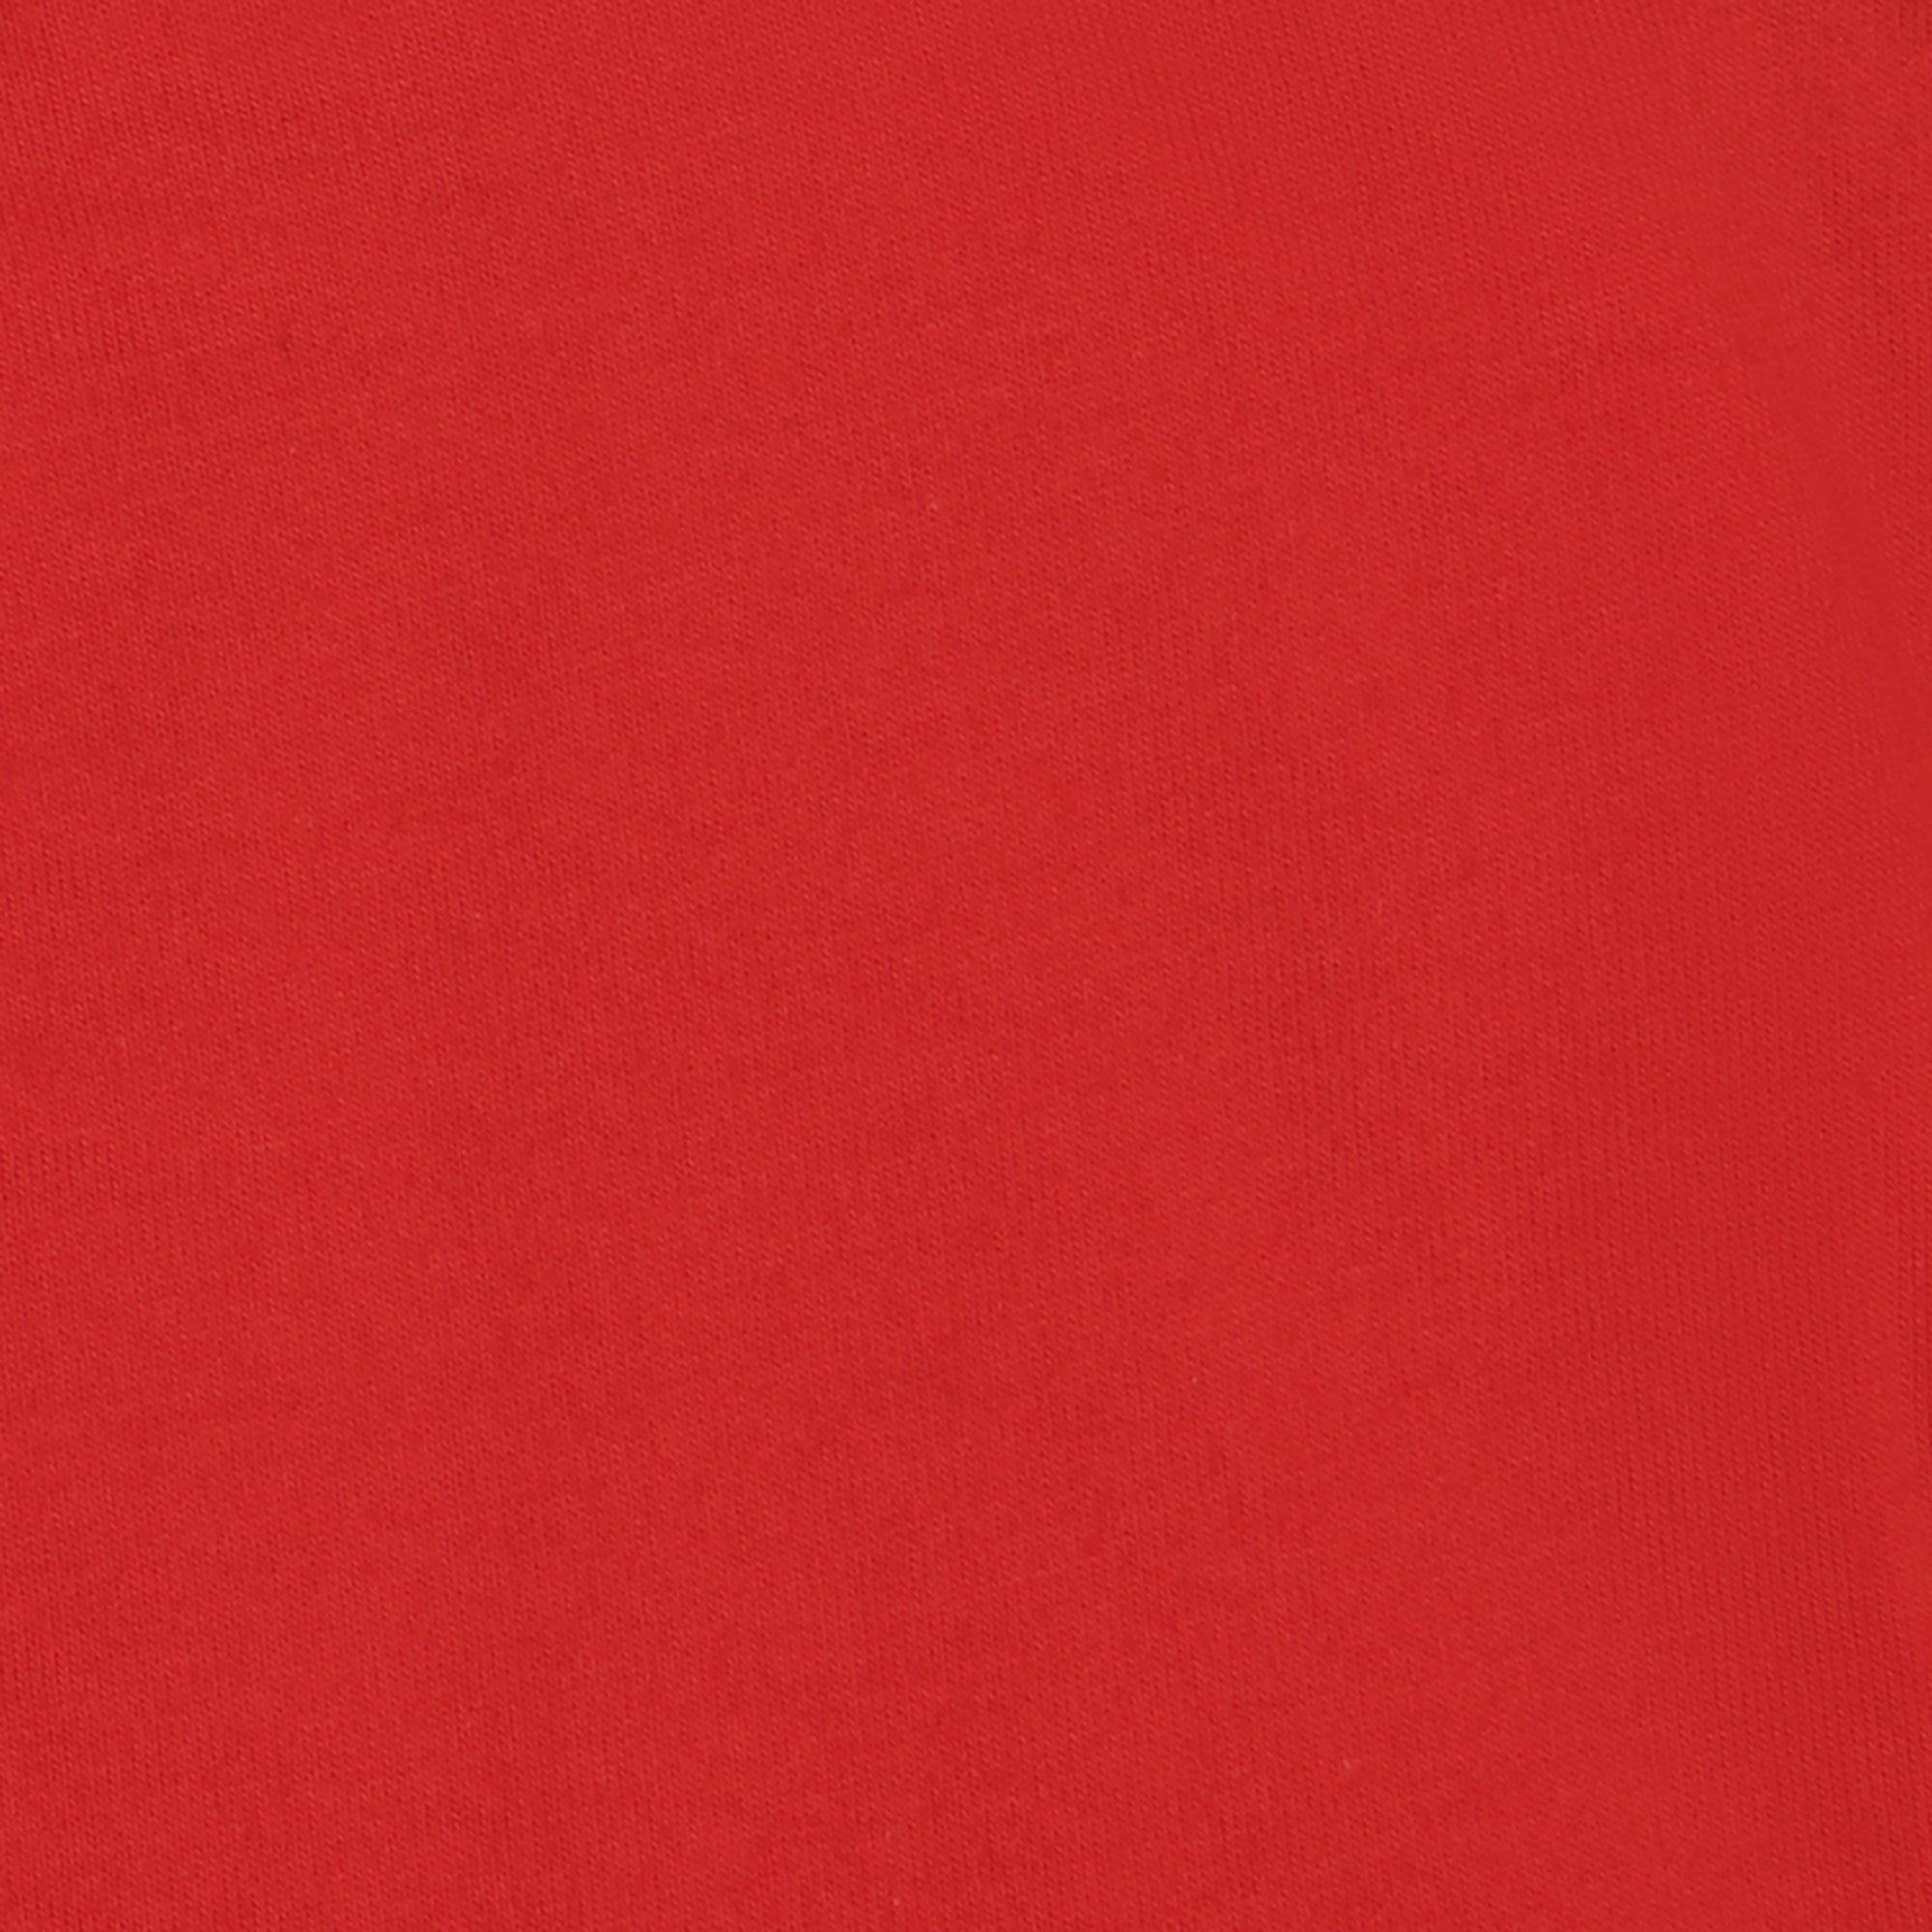 Мужская футболка Pantelemone MF-913 46 красная, цвет красный, размер 46 - фото 3